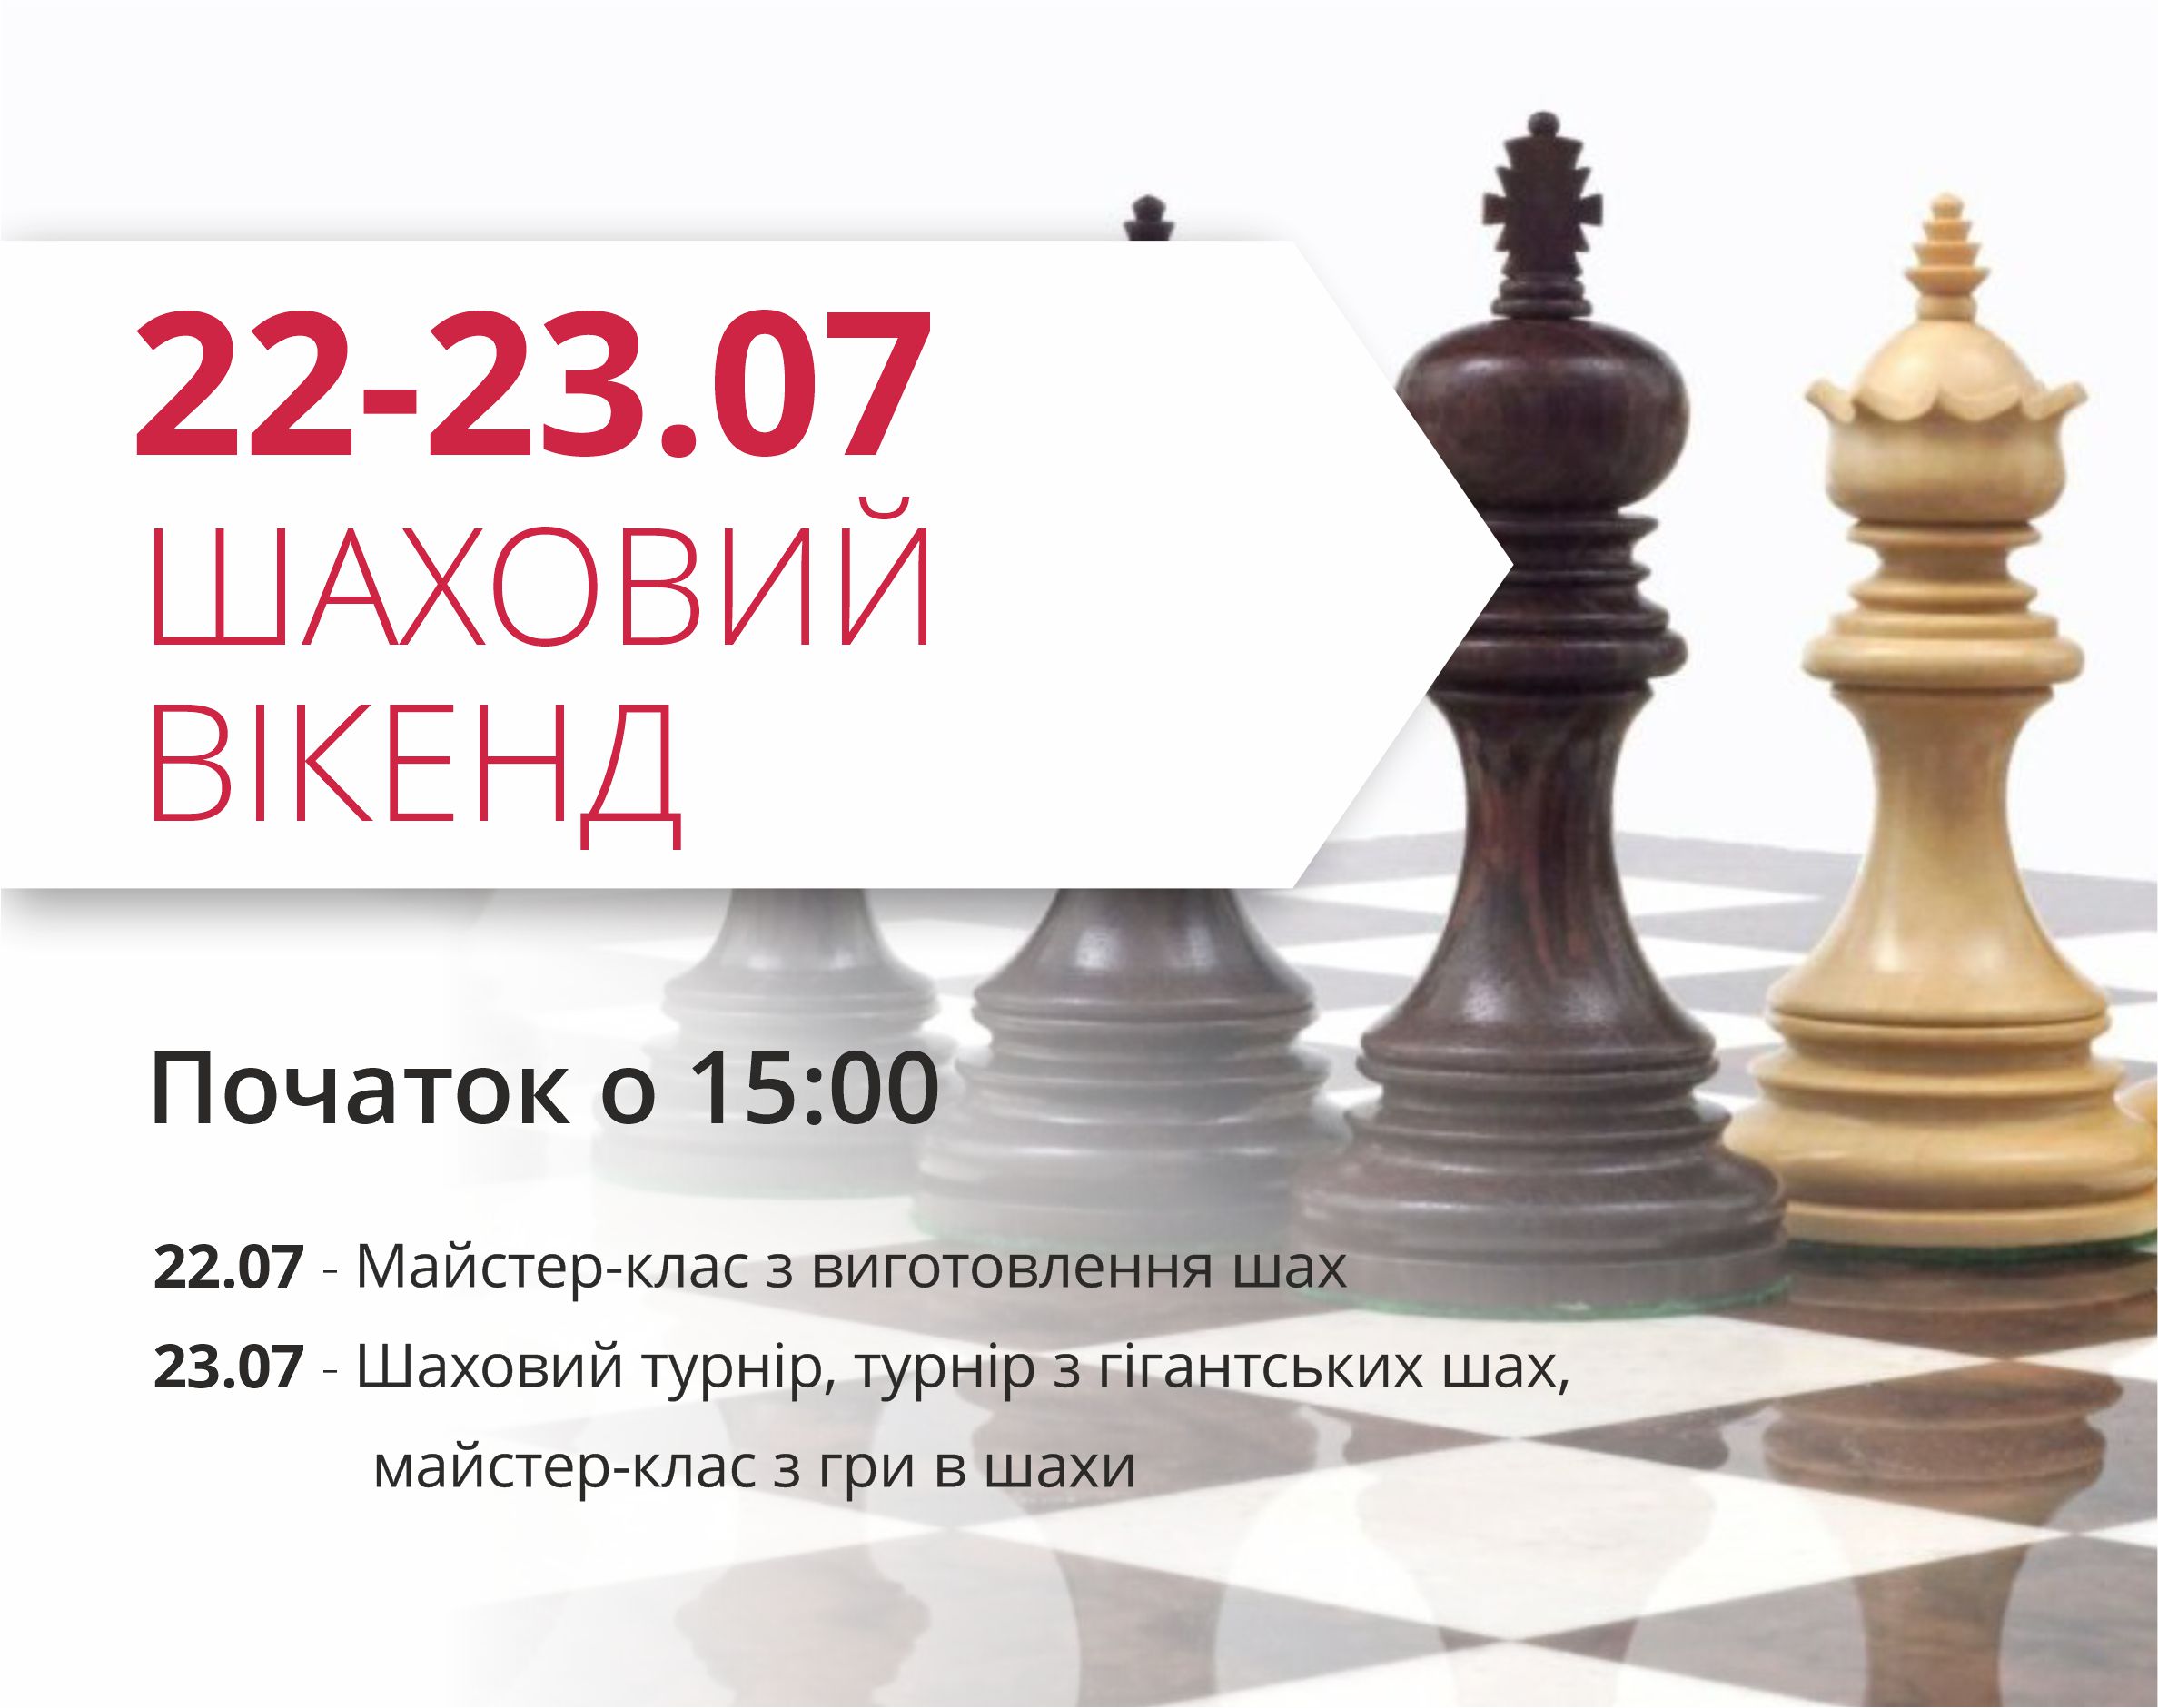 Приглашаем на шахматный уикенд!